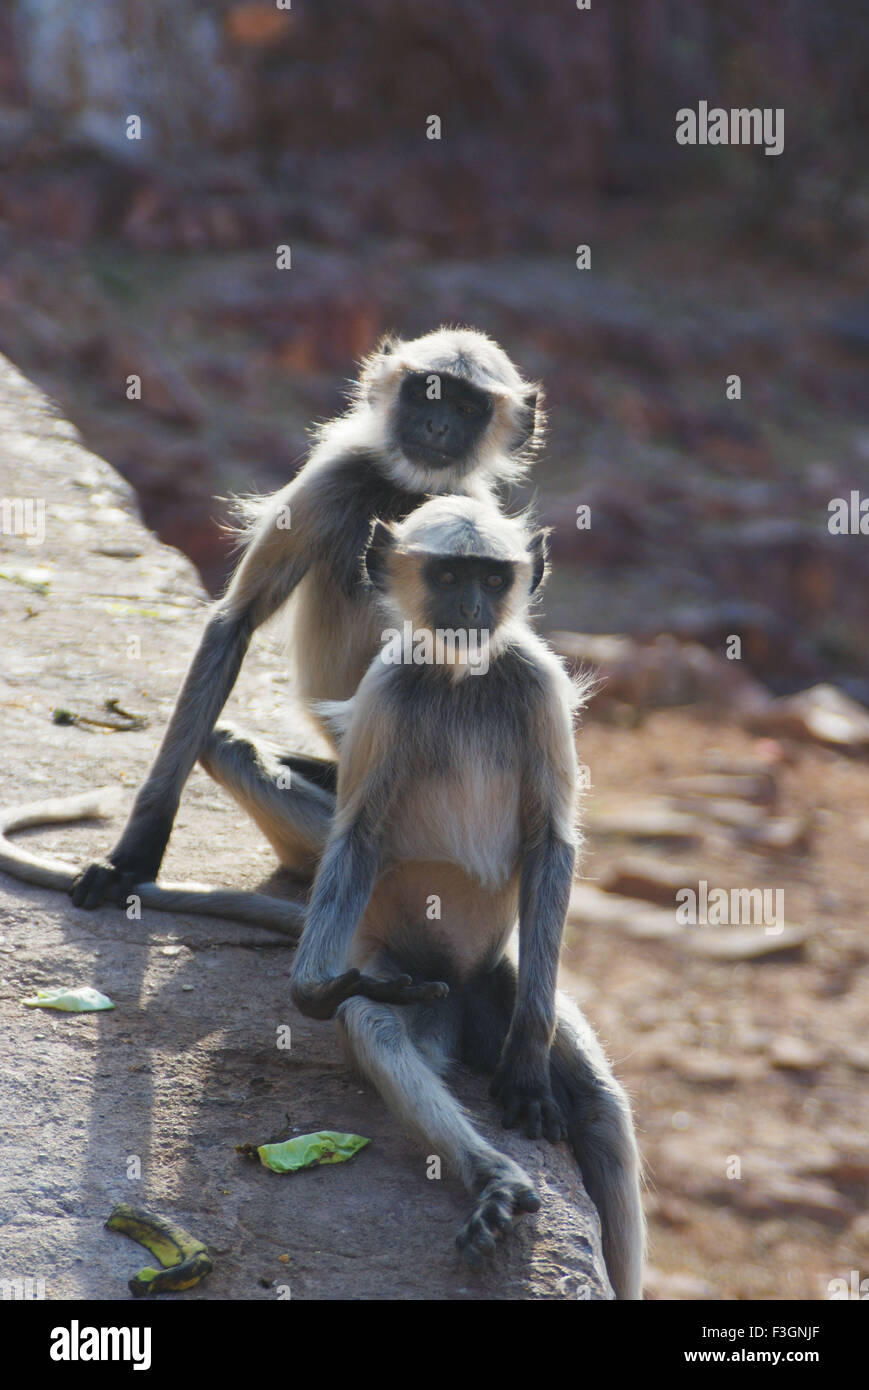 Two langur playing, Gray langur, Hanuman langur, Hanuman monkey, Jodhpur, Rajasthan, India, Asia Stock Photo